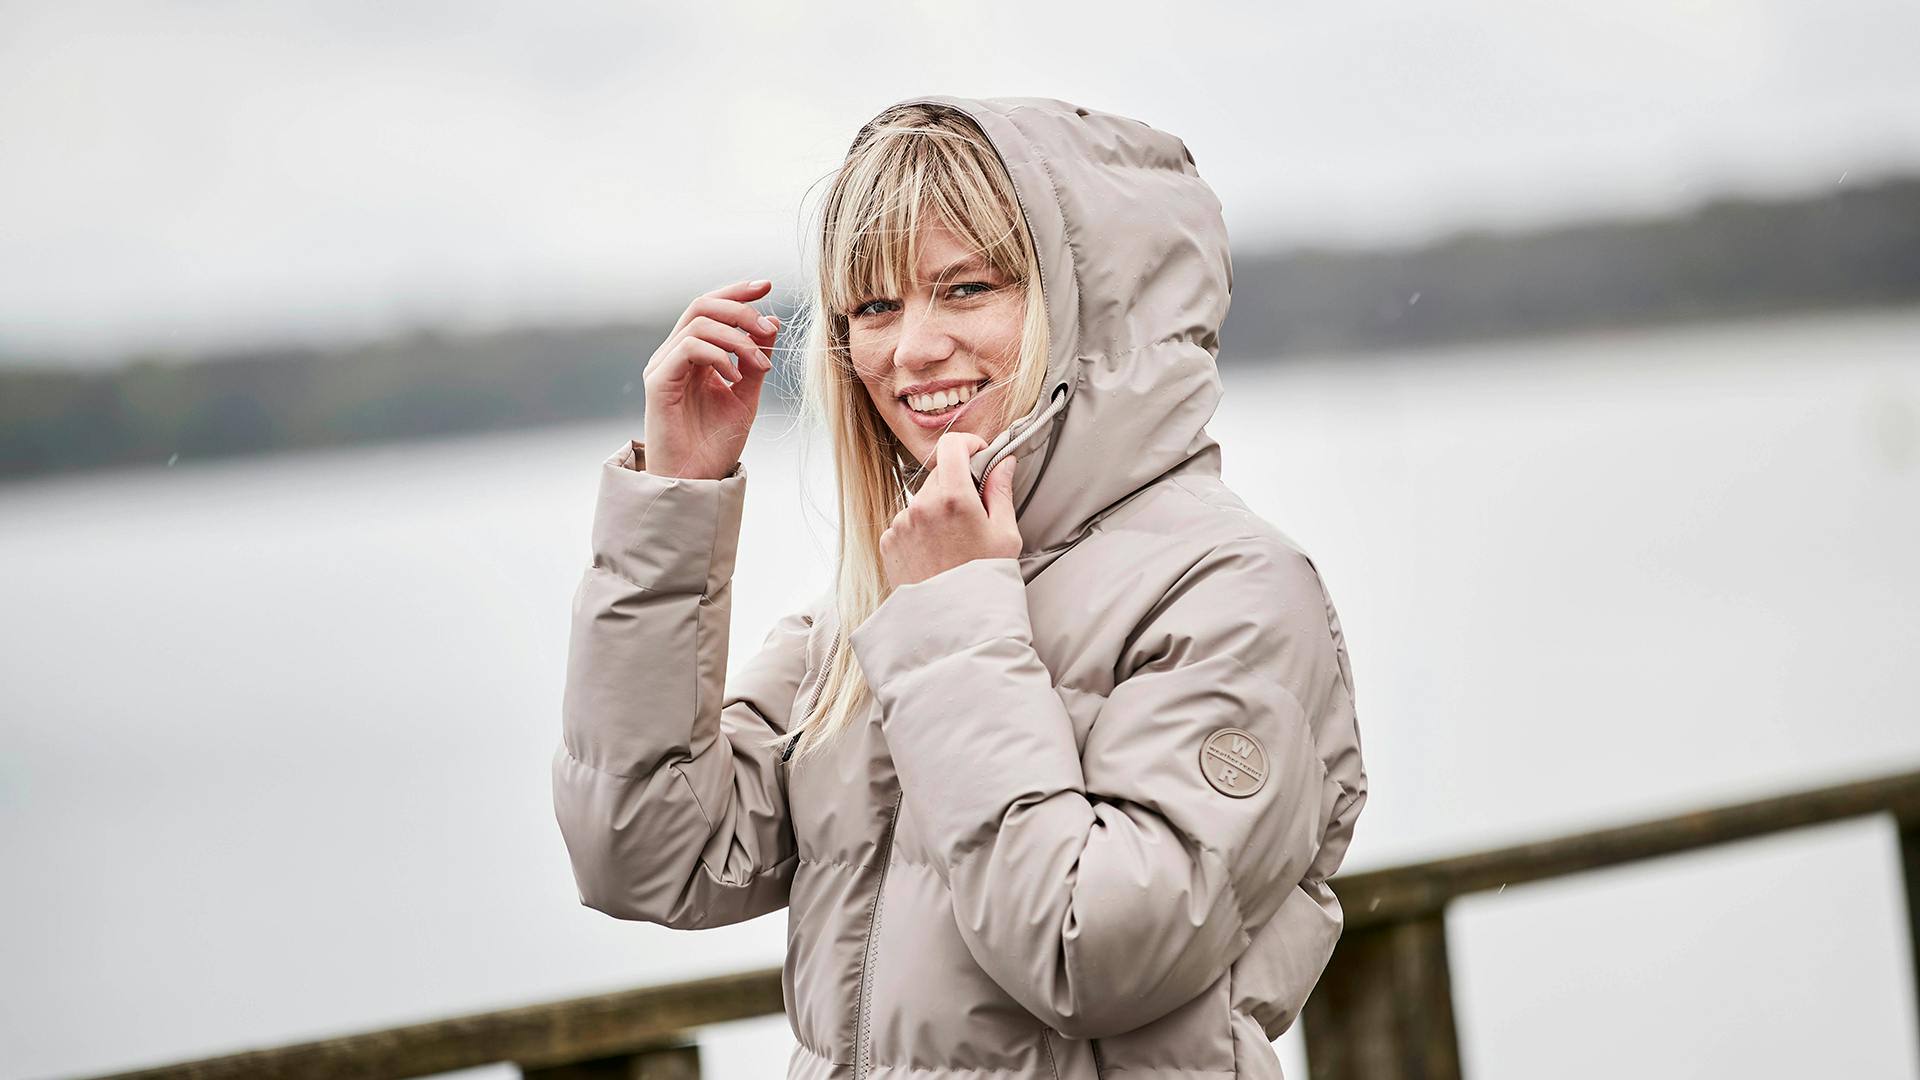  Weather Report: Outdoor tøj til det skandinaviske vejr 